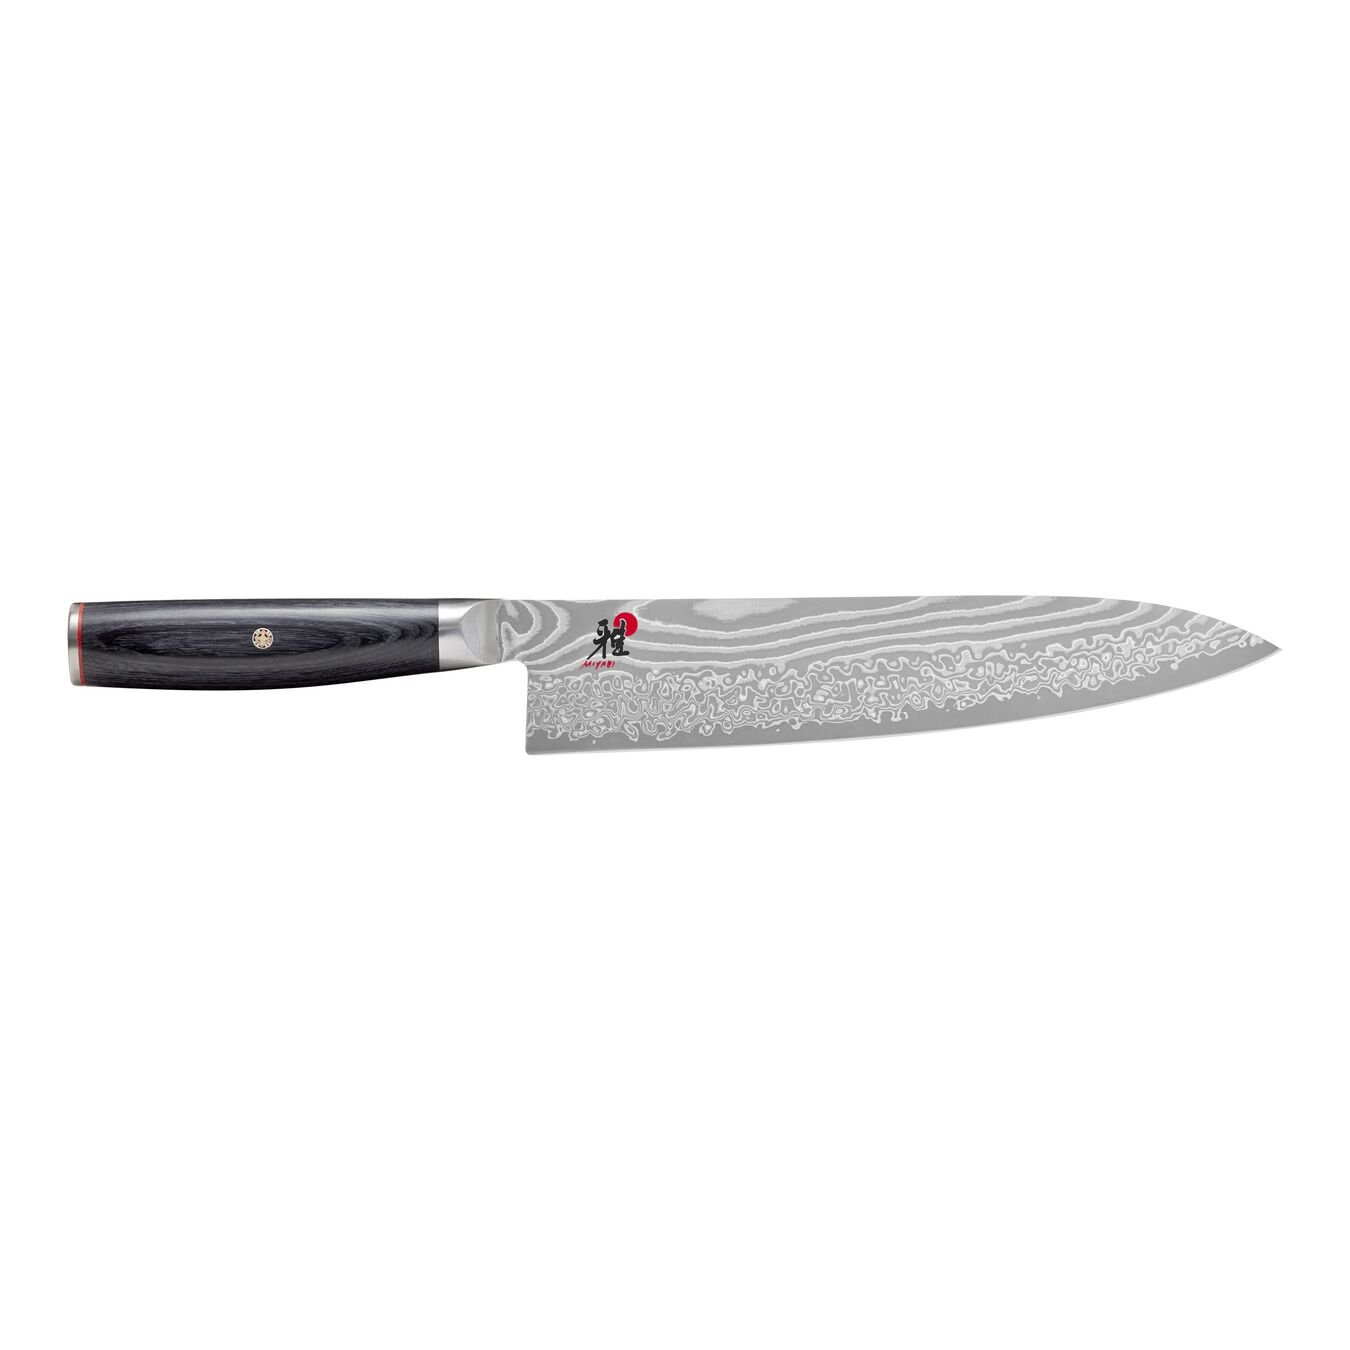 Gyutoh Bıçağı | 24 cm,,large 1